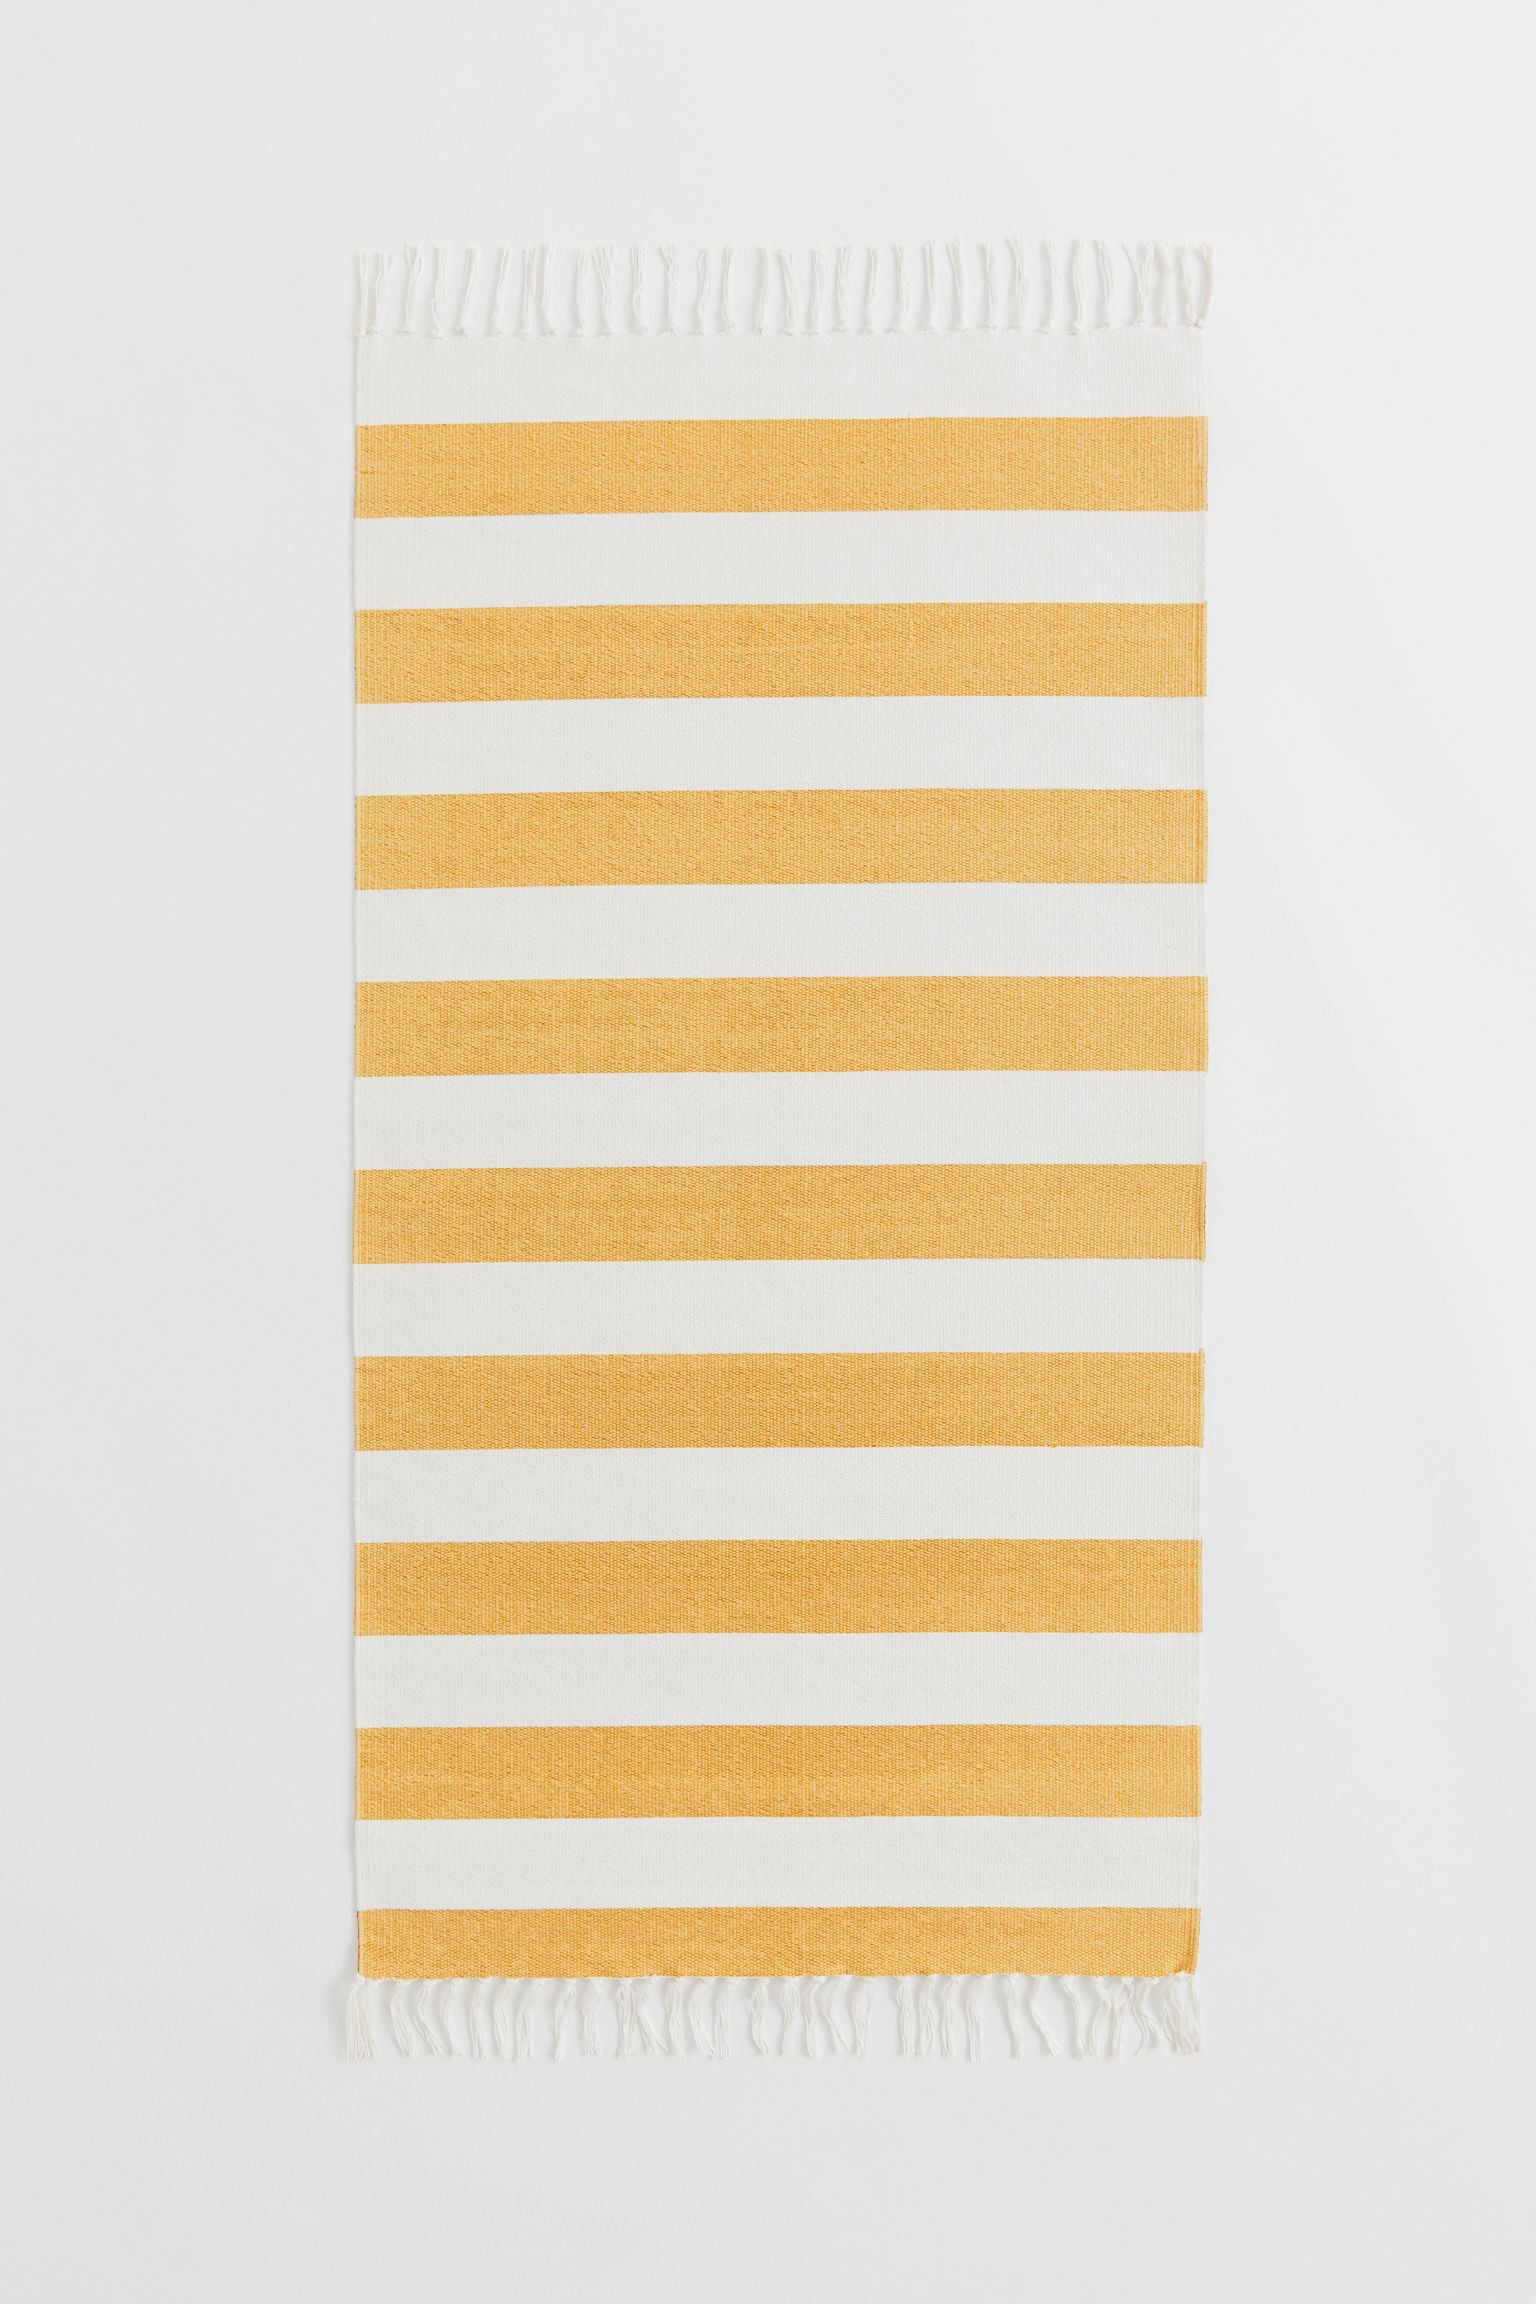 H&M Home Хлопковый ковер в полоску, Желтый/Полосатый, 70x140 1025421001 | 1025421001